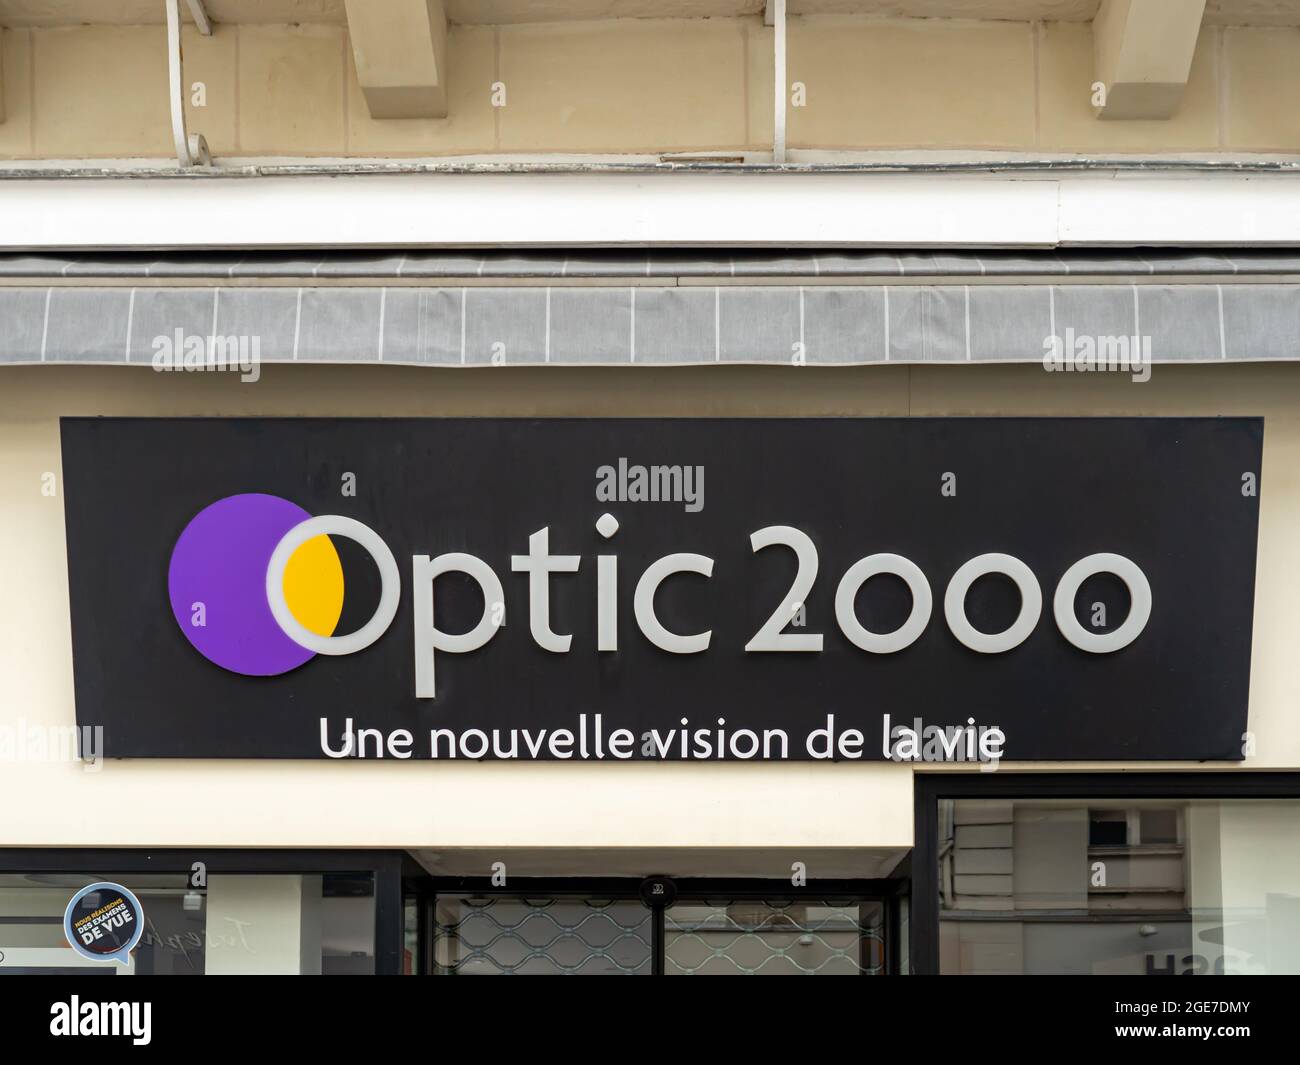 SABLE, FRANKREICH - 22. Jul 2021: Der berühmte FRONTLADEN DER MARKE OPTIC 2000 mit Logo und Beschilderung in Sable, Frankreich Stockfoto